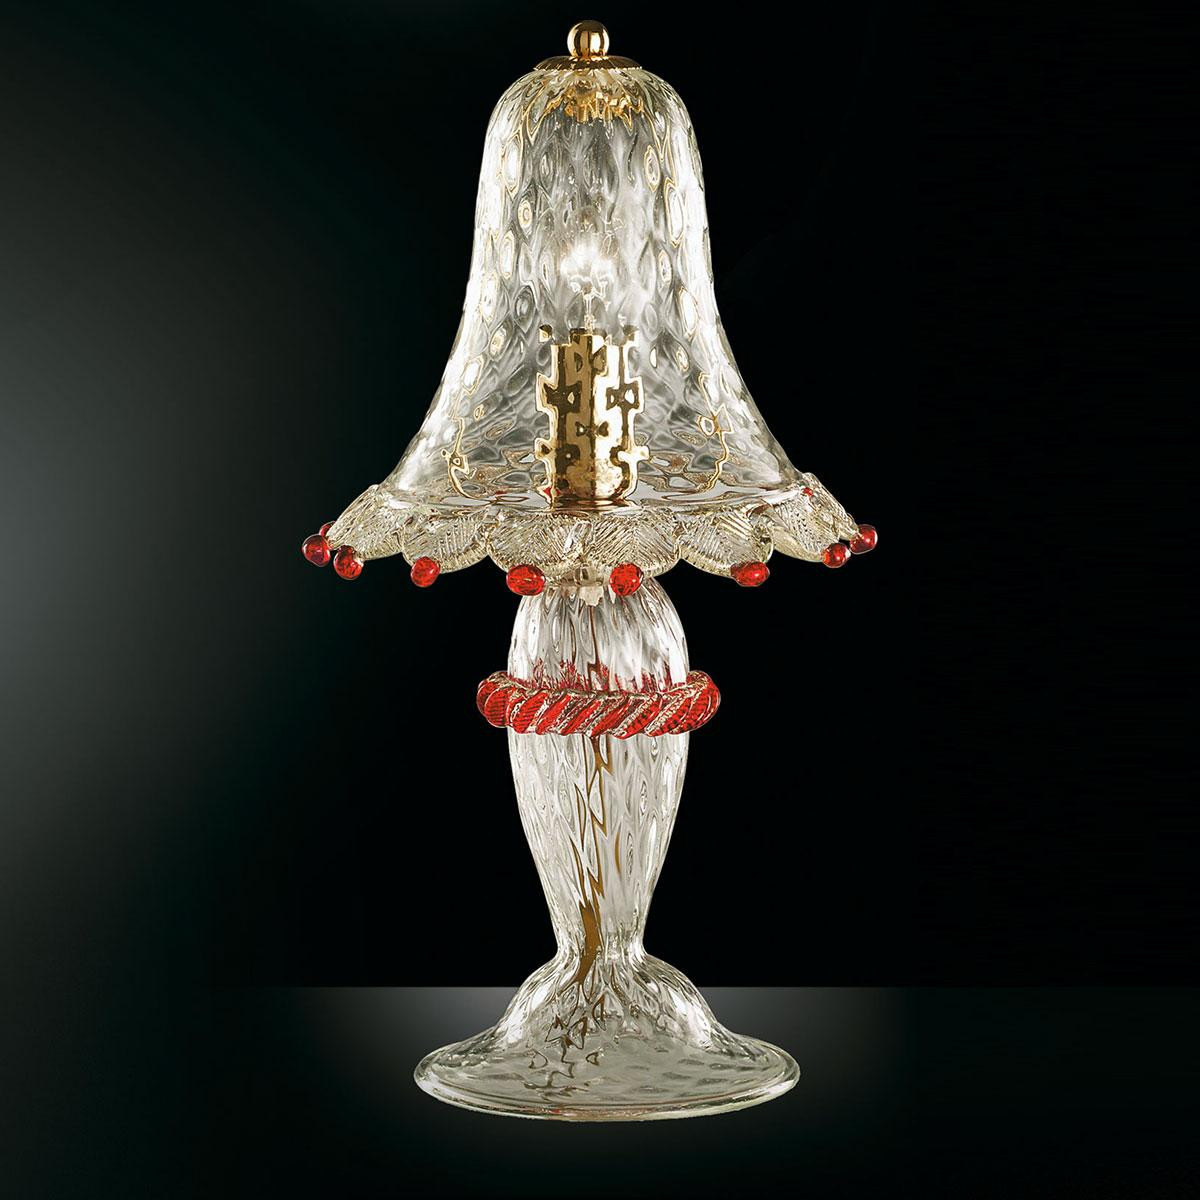 "Rosalba" Murano nachttischleuchte - 1 flammig - transparent, gold und rot